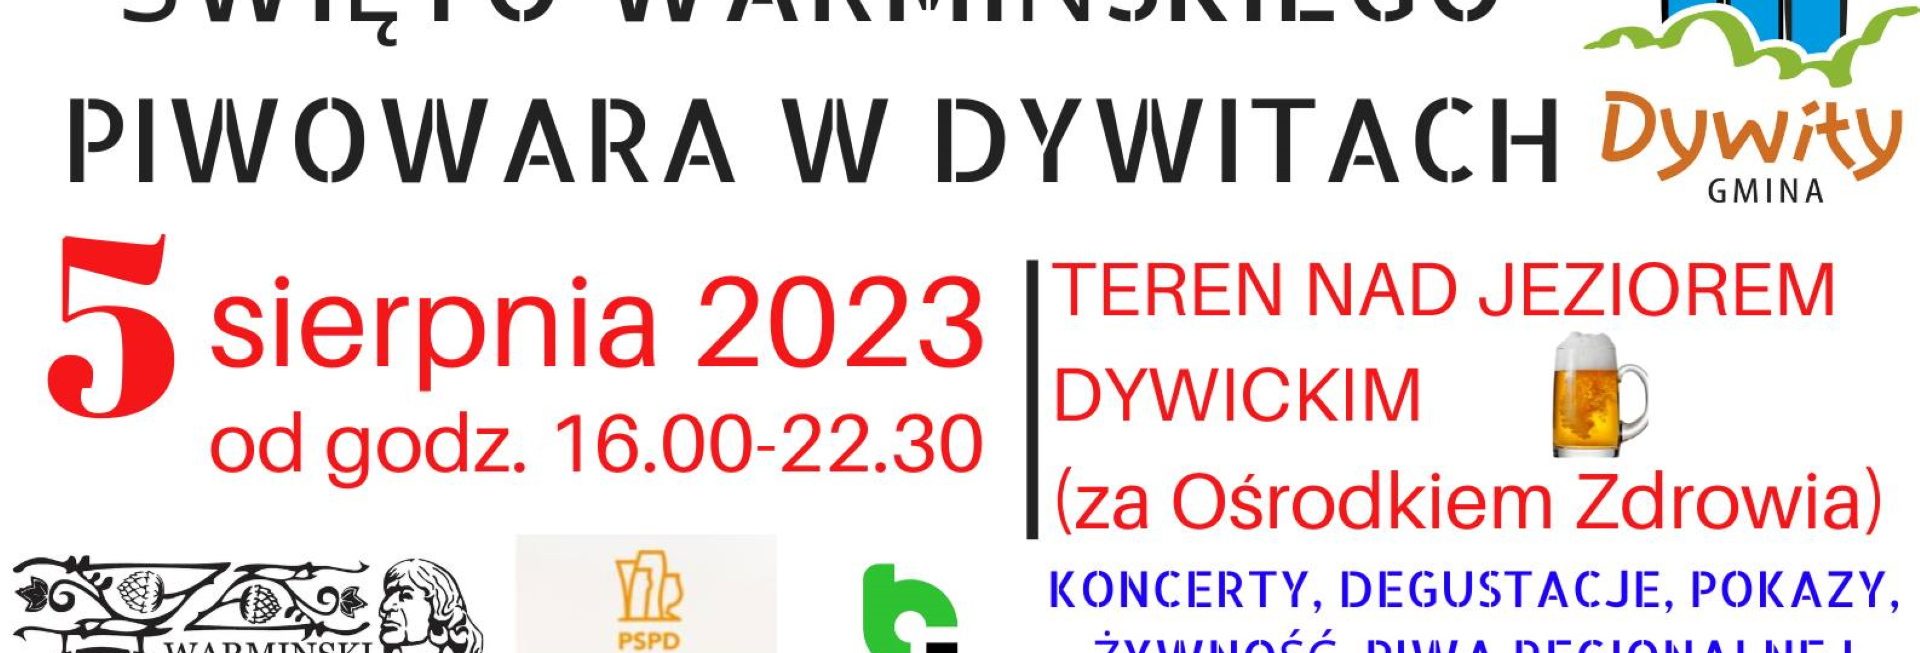 Plakat zapraszający w sobotę 5 sierpnia 2023 r. do Dywit na Święto Warmińskiego Piwowara Dywity 2023.